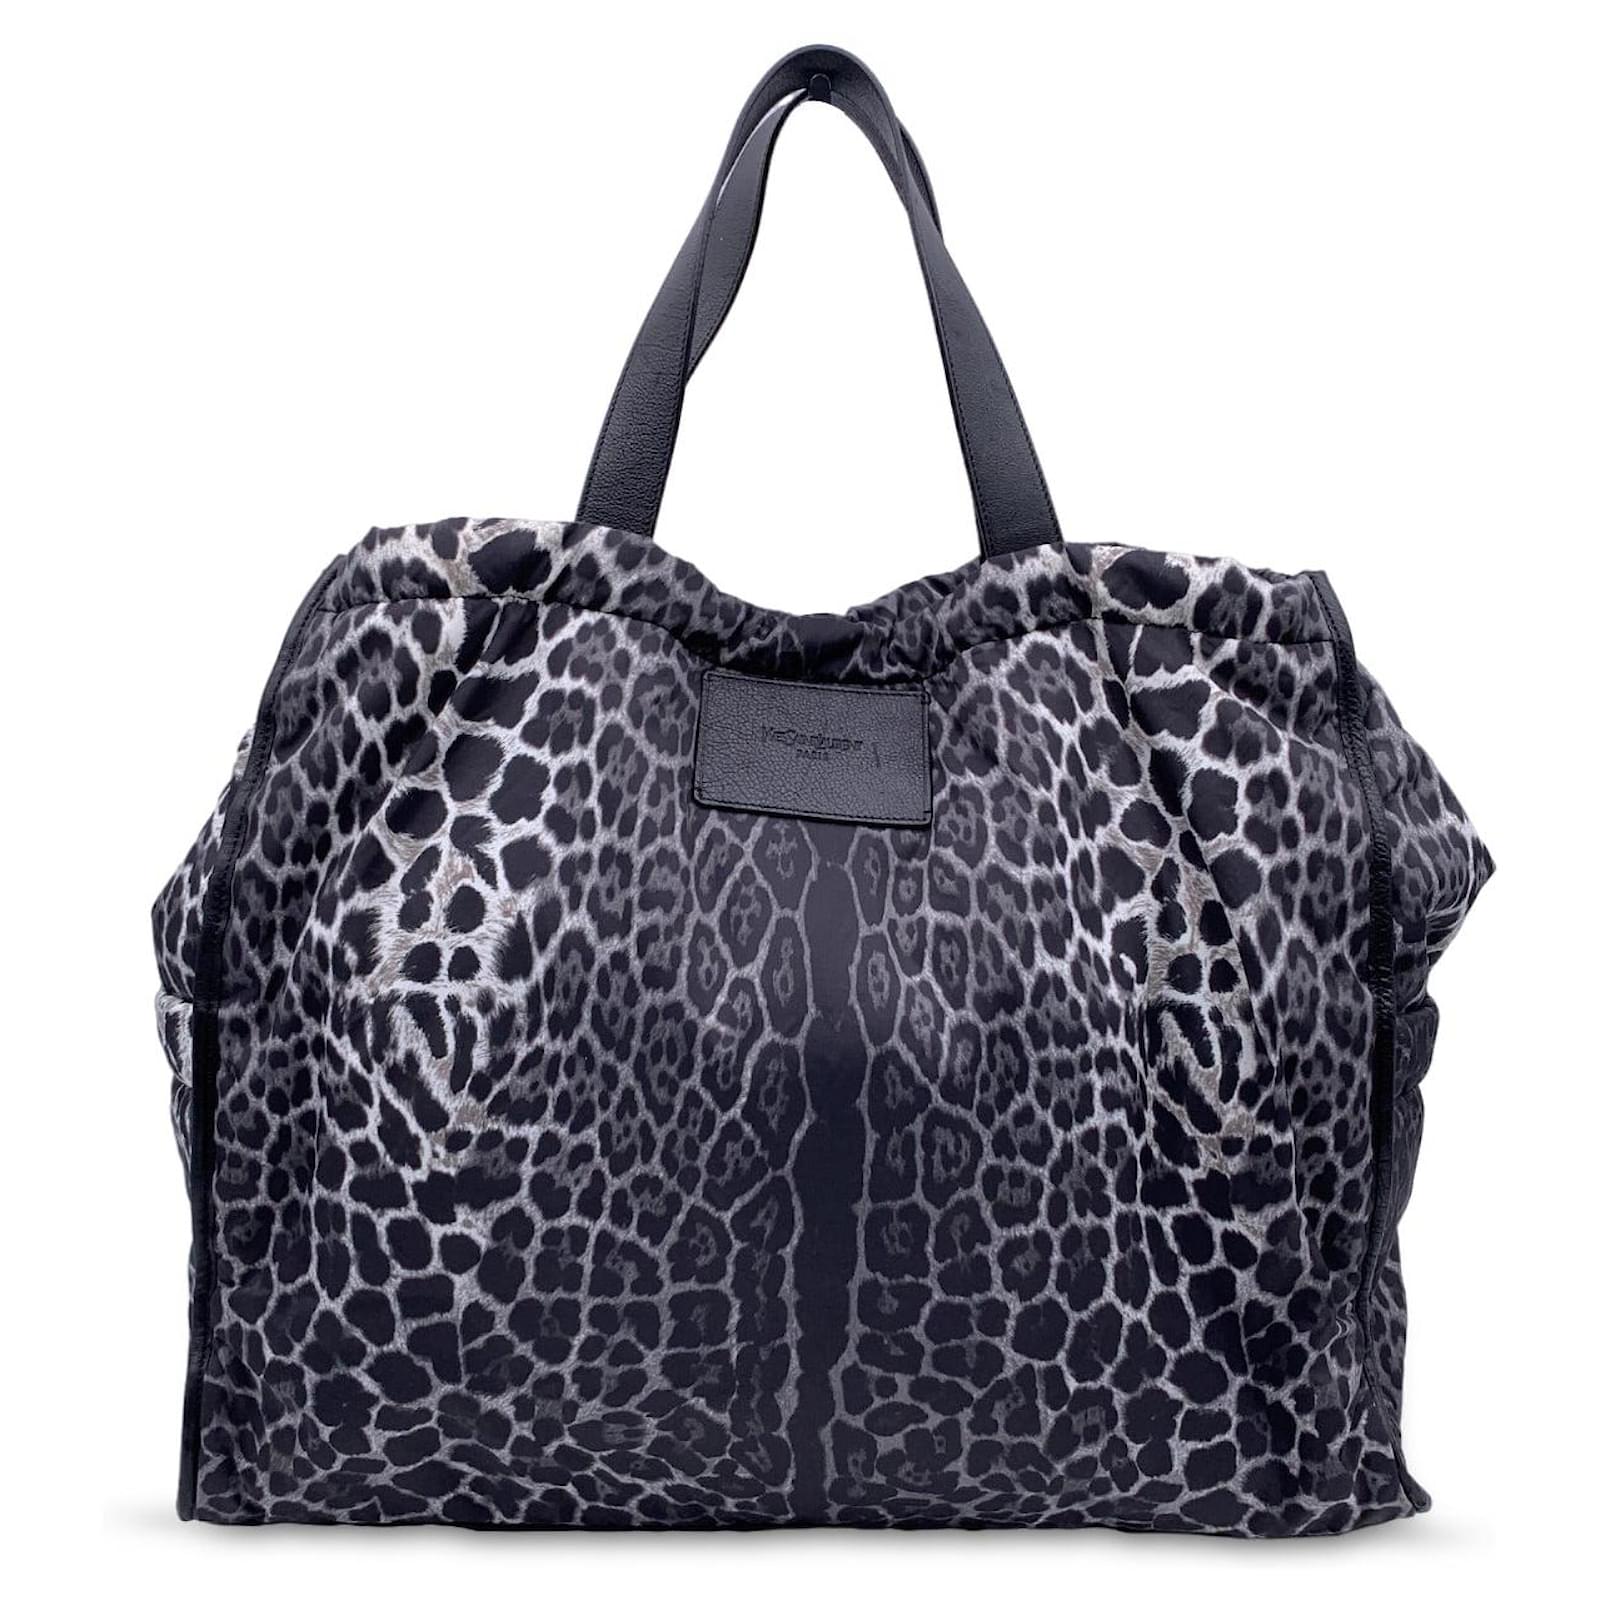 Yves Saint Laurent Mombasa Tote Bag Vintage Black Leather Nylon Ladies